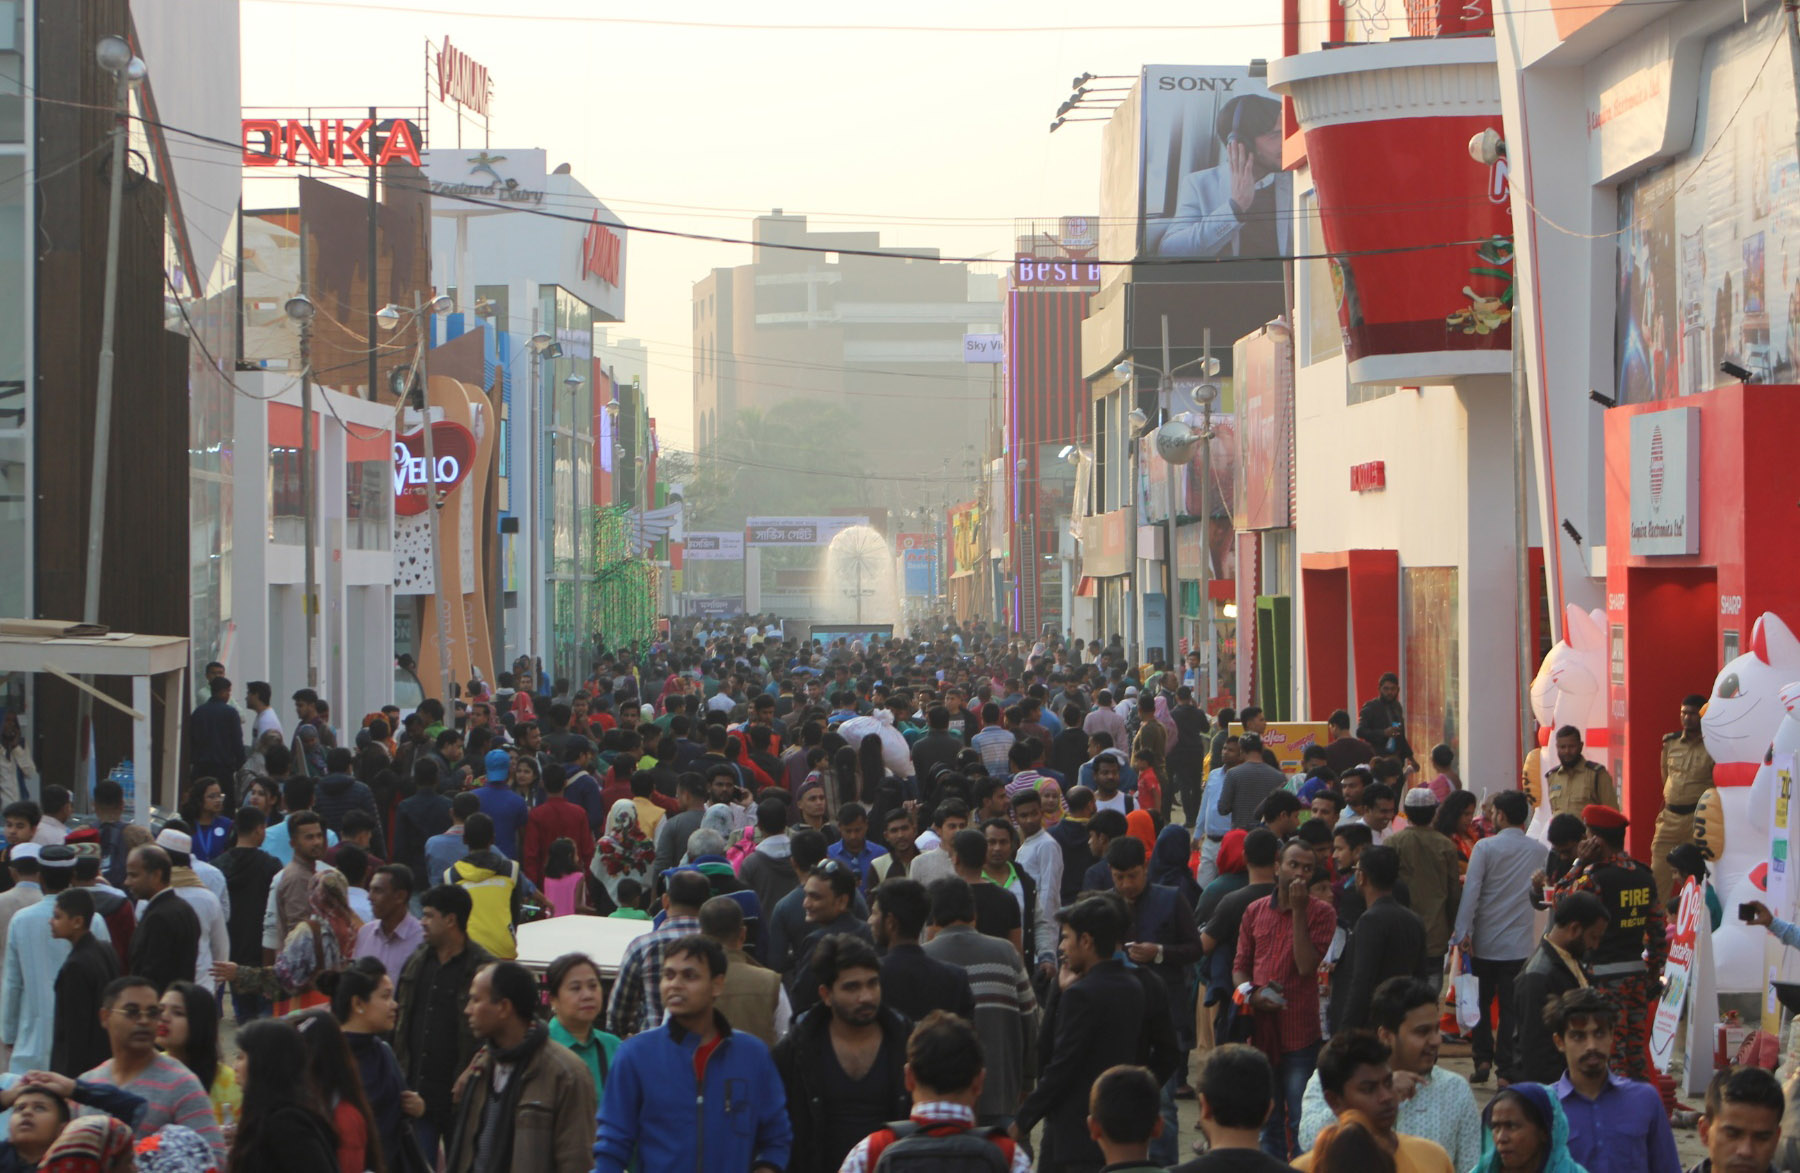 ঢাকার শেরেবাংলা নগরে শুরু হওয়া মাসব্যাপী ঢাকা আন্তর্জাতিক বাণিজ্য মেলা জমে উঠছে। শনিবার মেলায় দর্শনার্থীদের ভিড়।